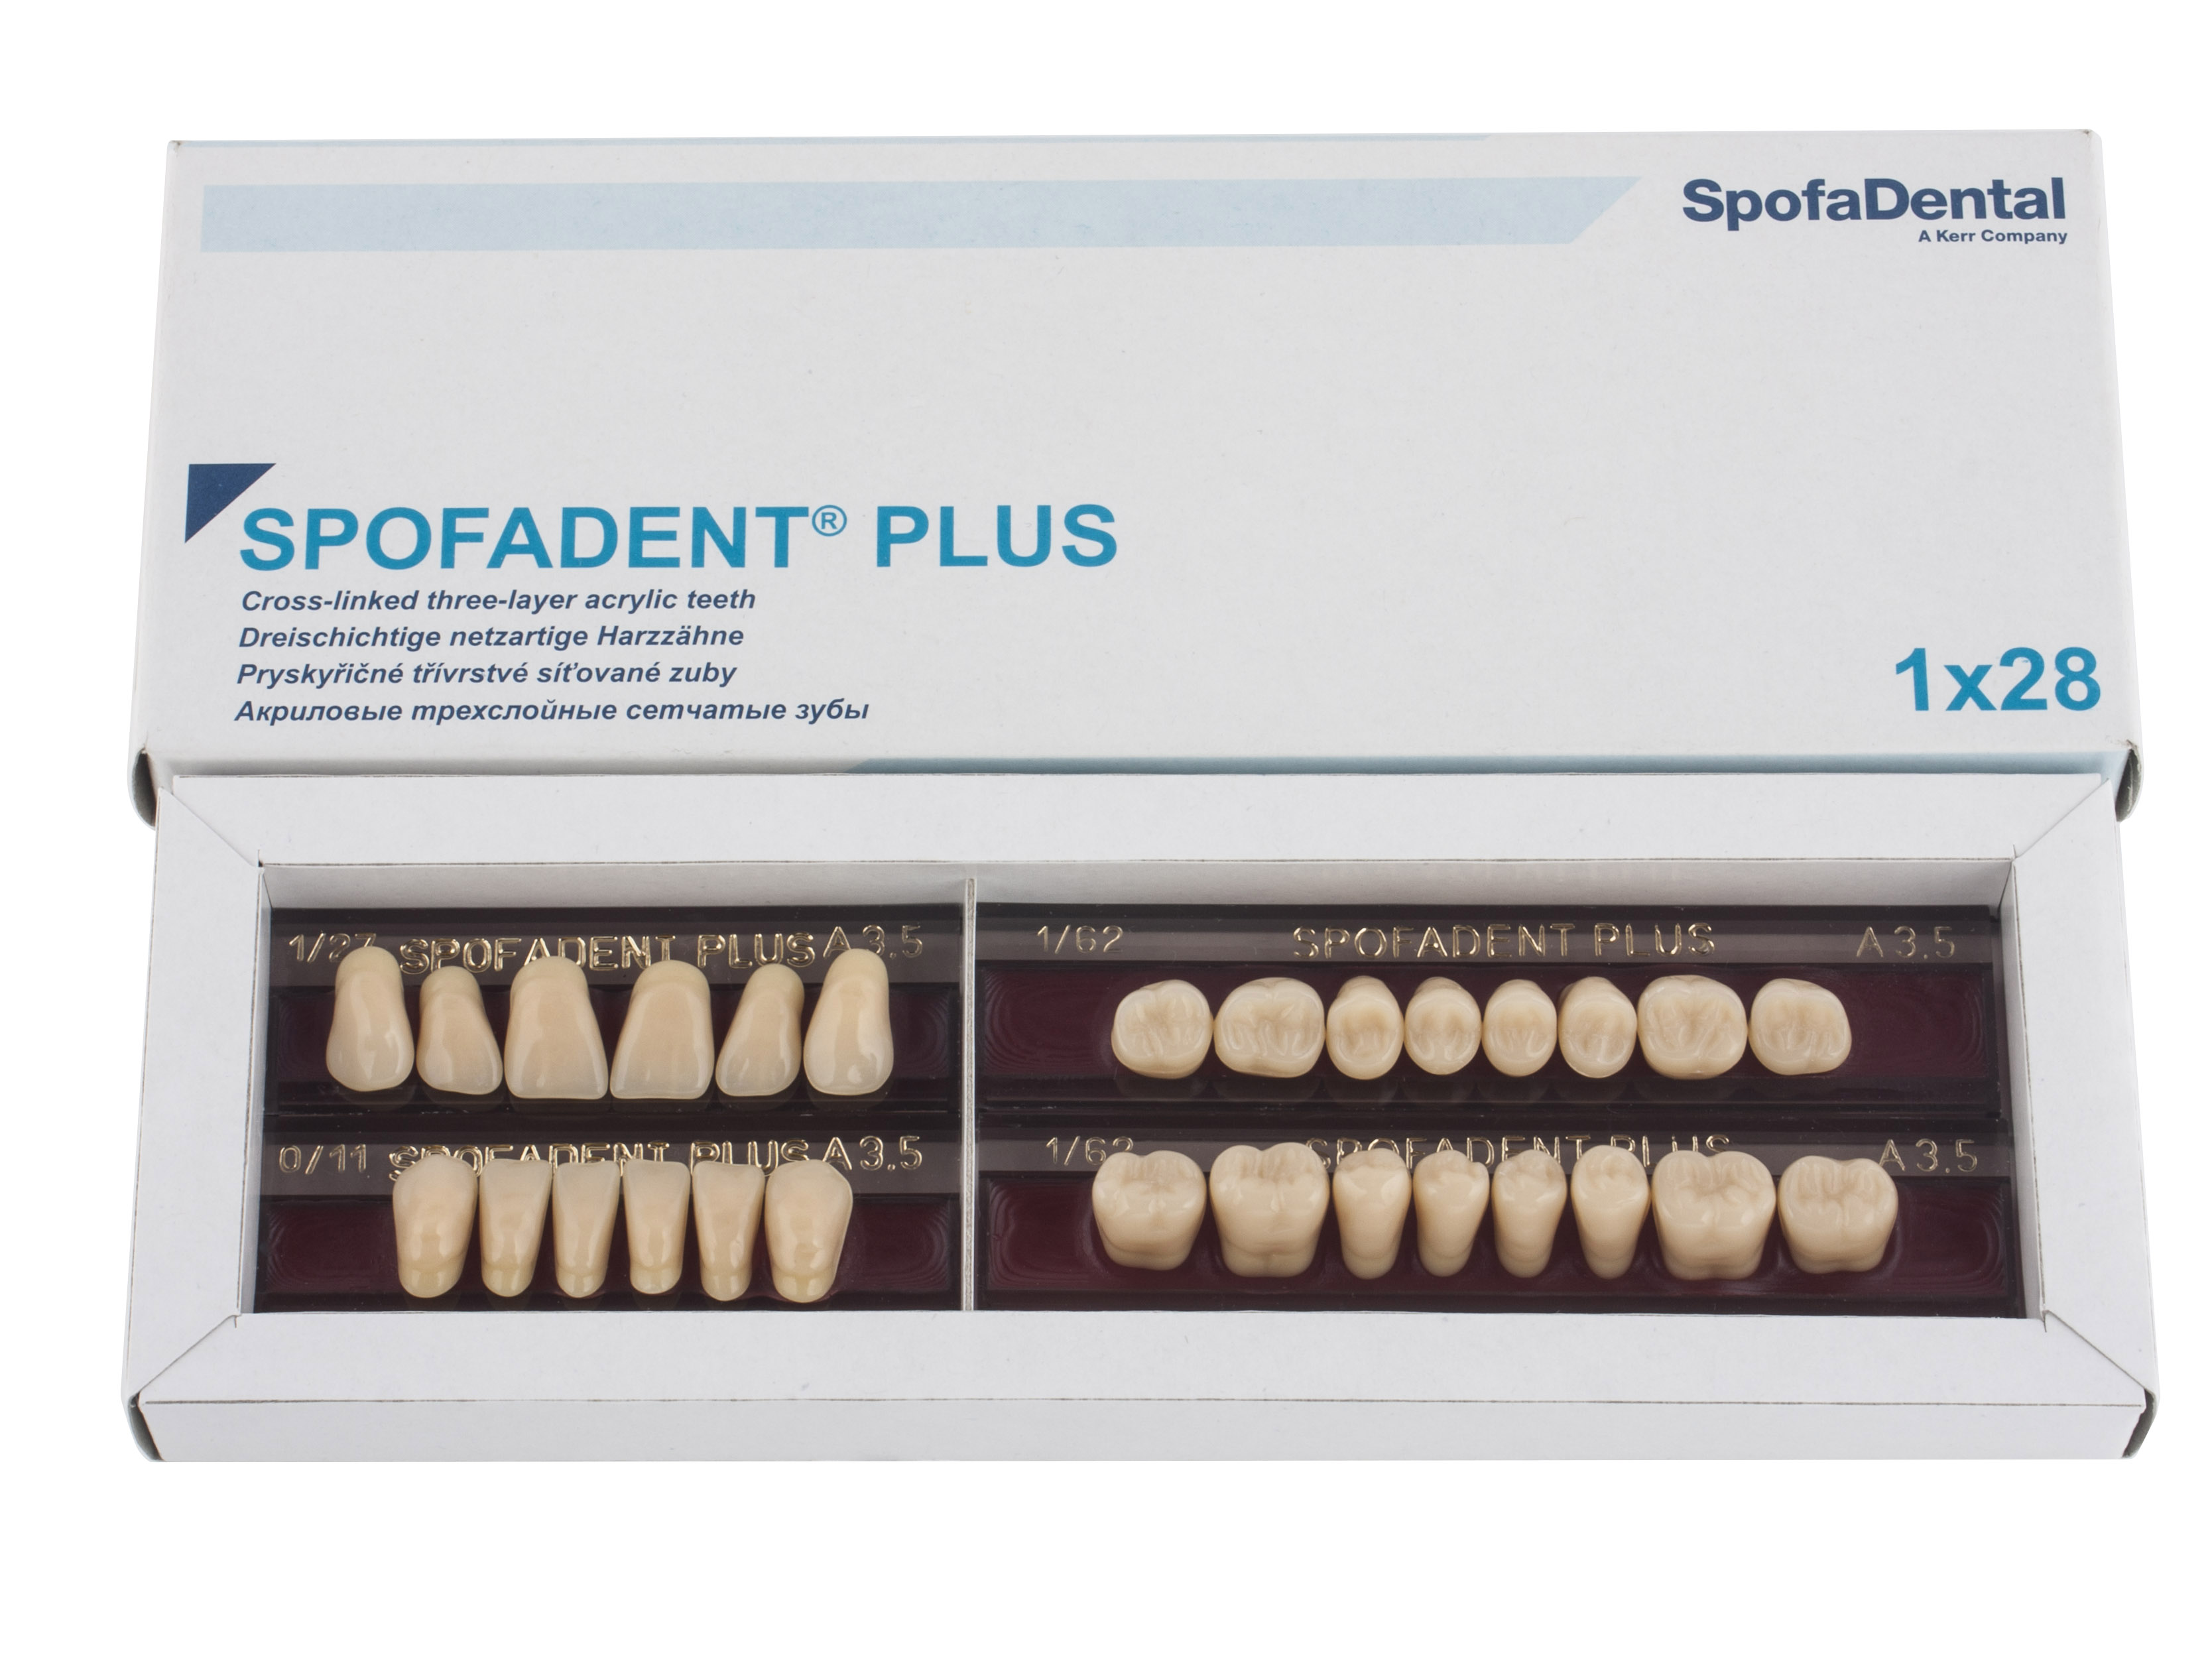 Spofadent Plus (А3,5) 1/27-0/11-1/62